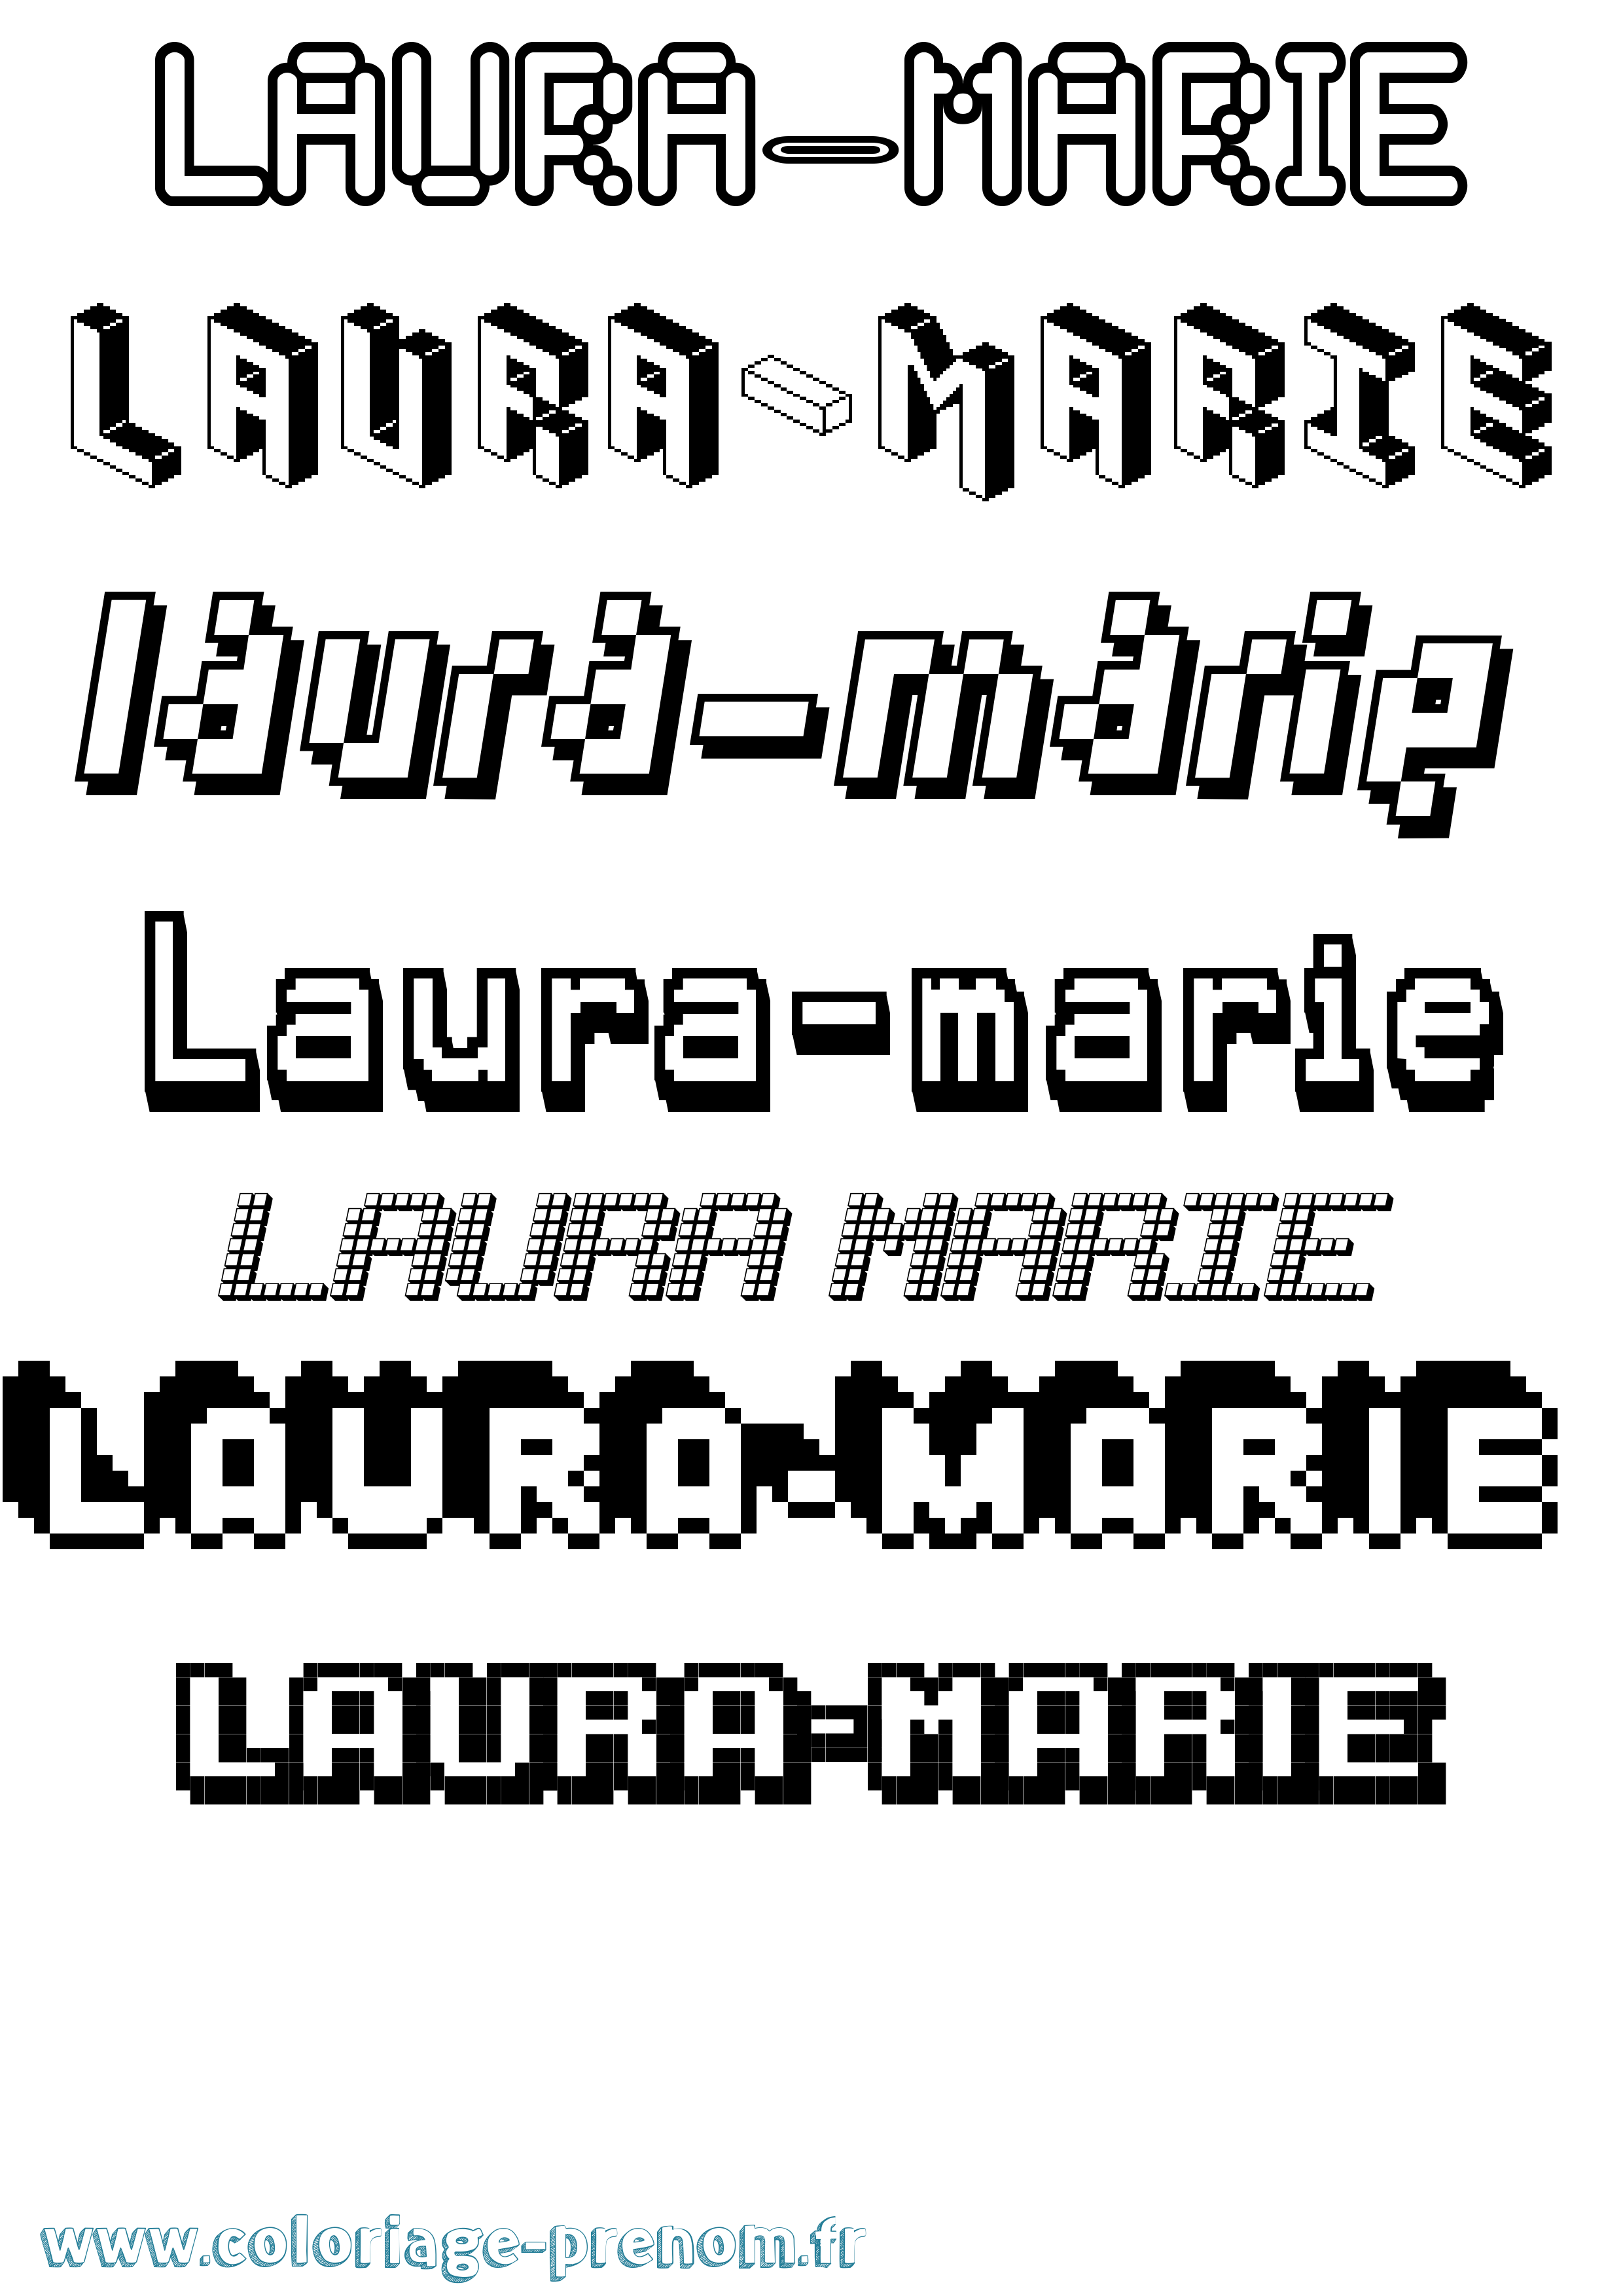 Coloriage prénom Laura-Marie Pixel